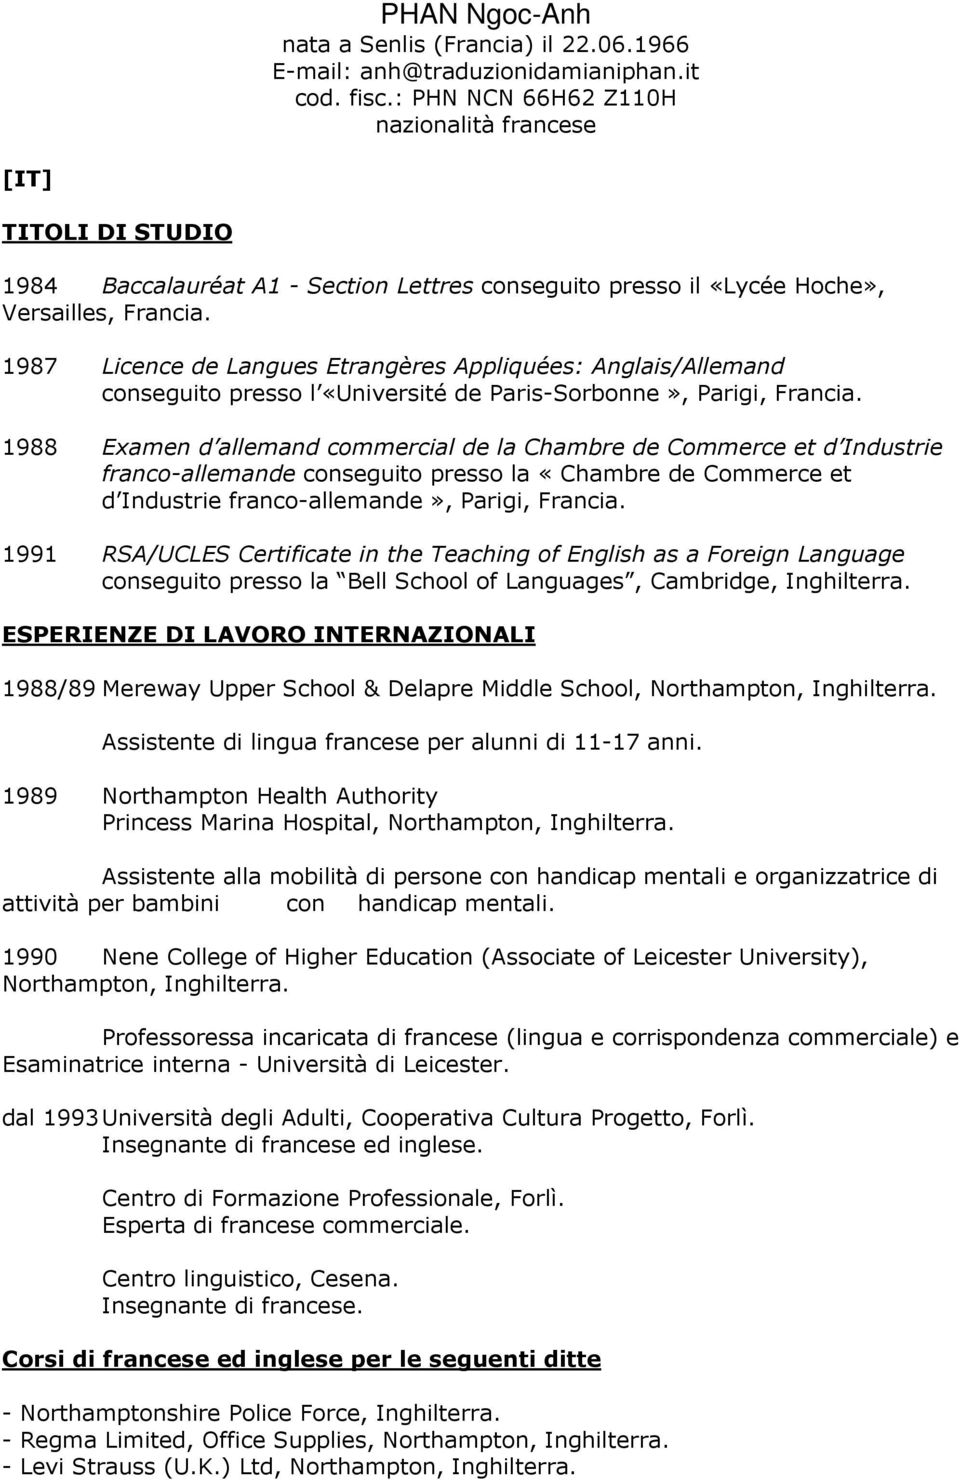 1987 Licence de Langues Etrangères Appliquées: Anglais/Allemand conseguito presso l «Université de Paris-Sorbonne», Parigi, Francia.